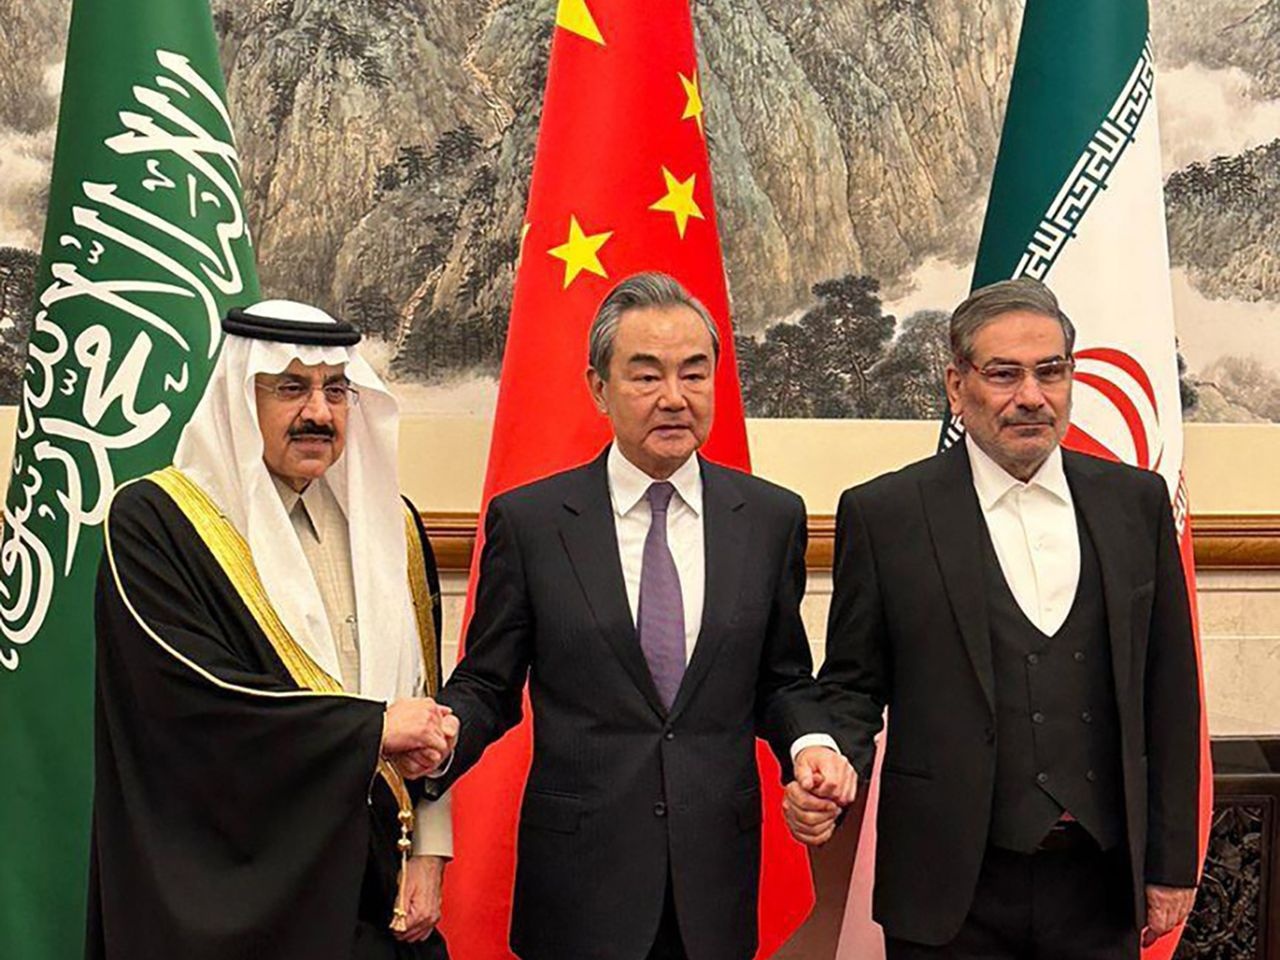 Với thỏa thuận Saudi - Iran, Trung Quốc đe dọa ảnh hưởng của Mỹ? - Ảnh 1.